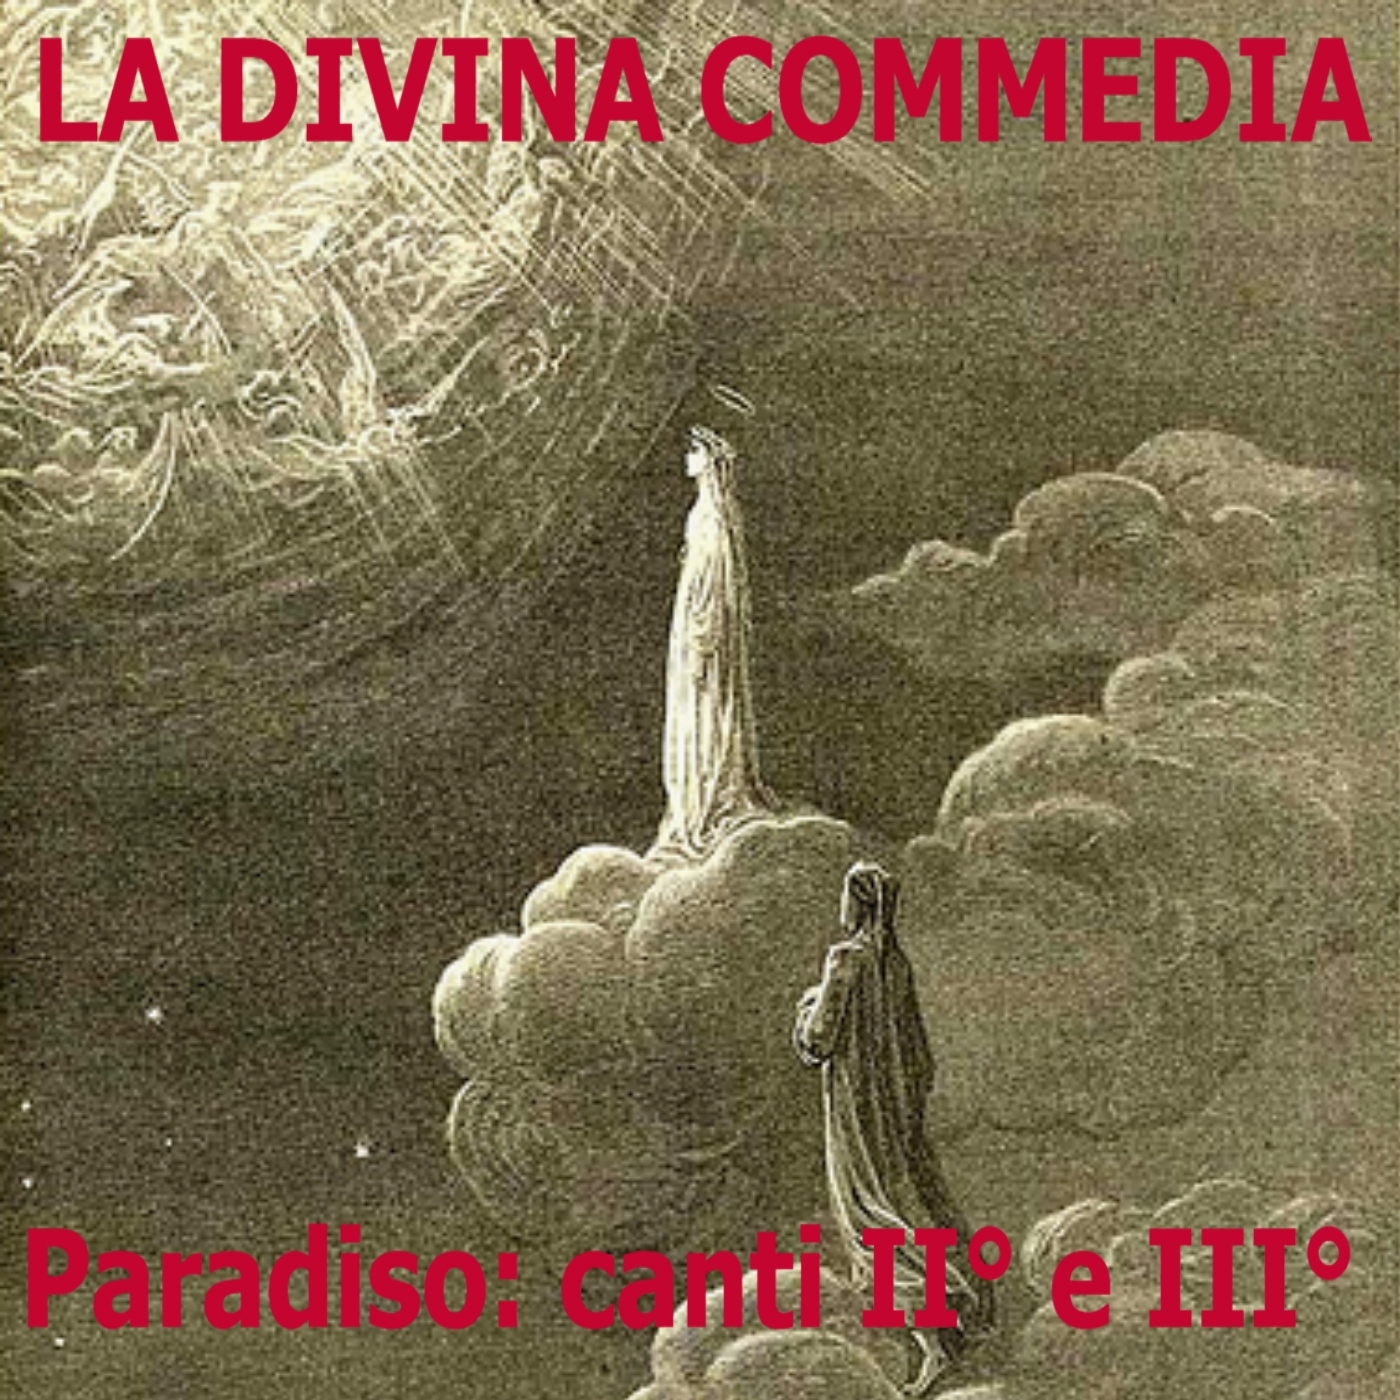 " La Divina Commedia" di Dante Alighieri: Paradiso, canti II e III